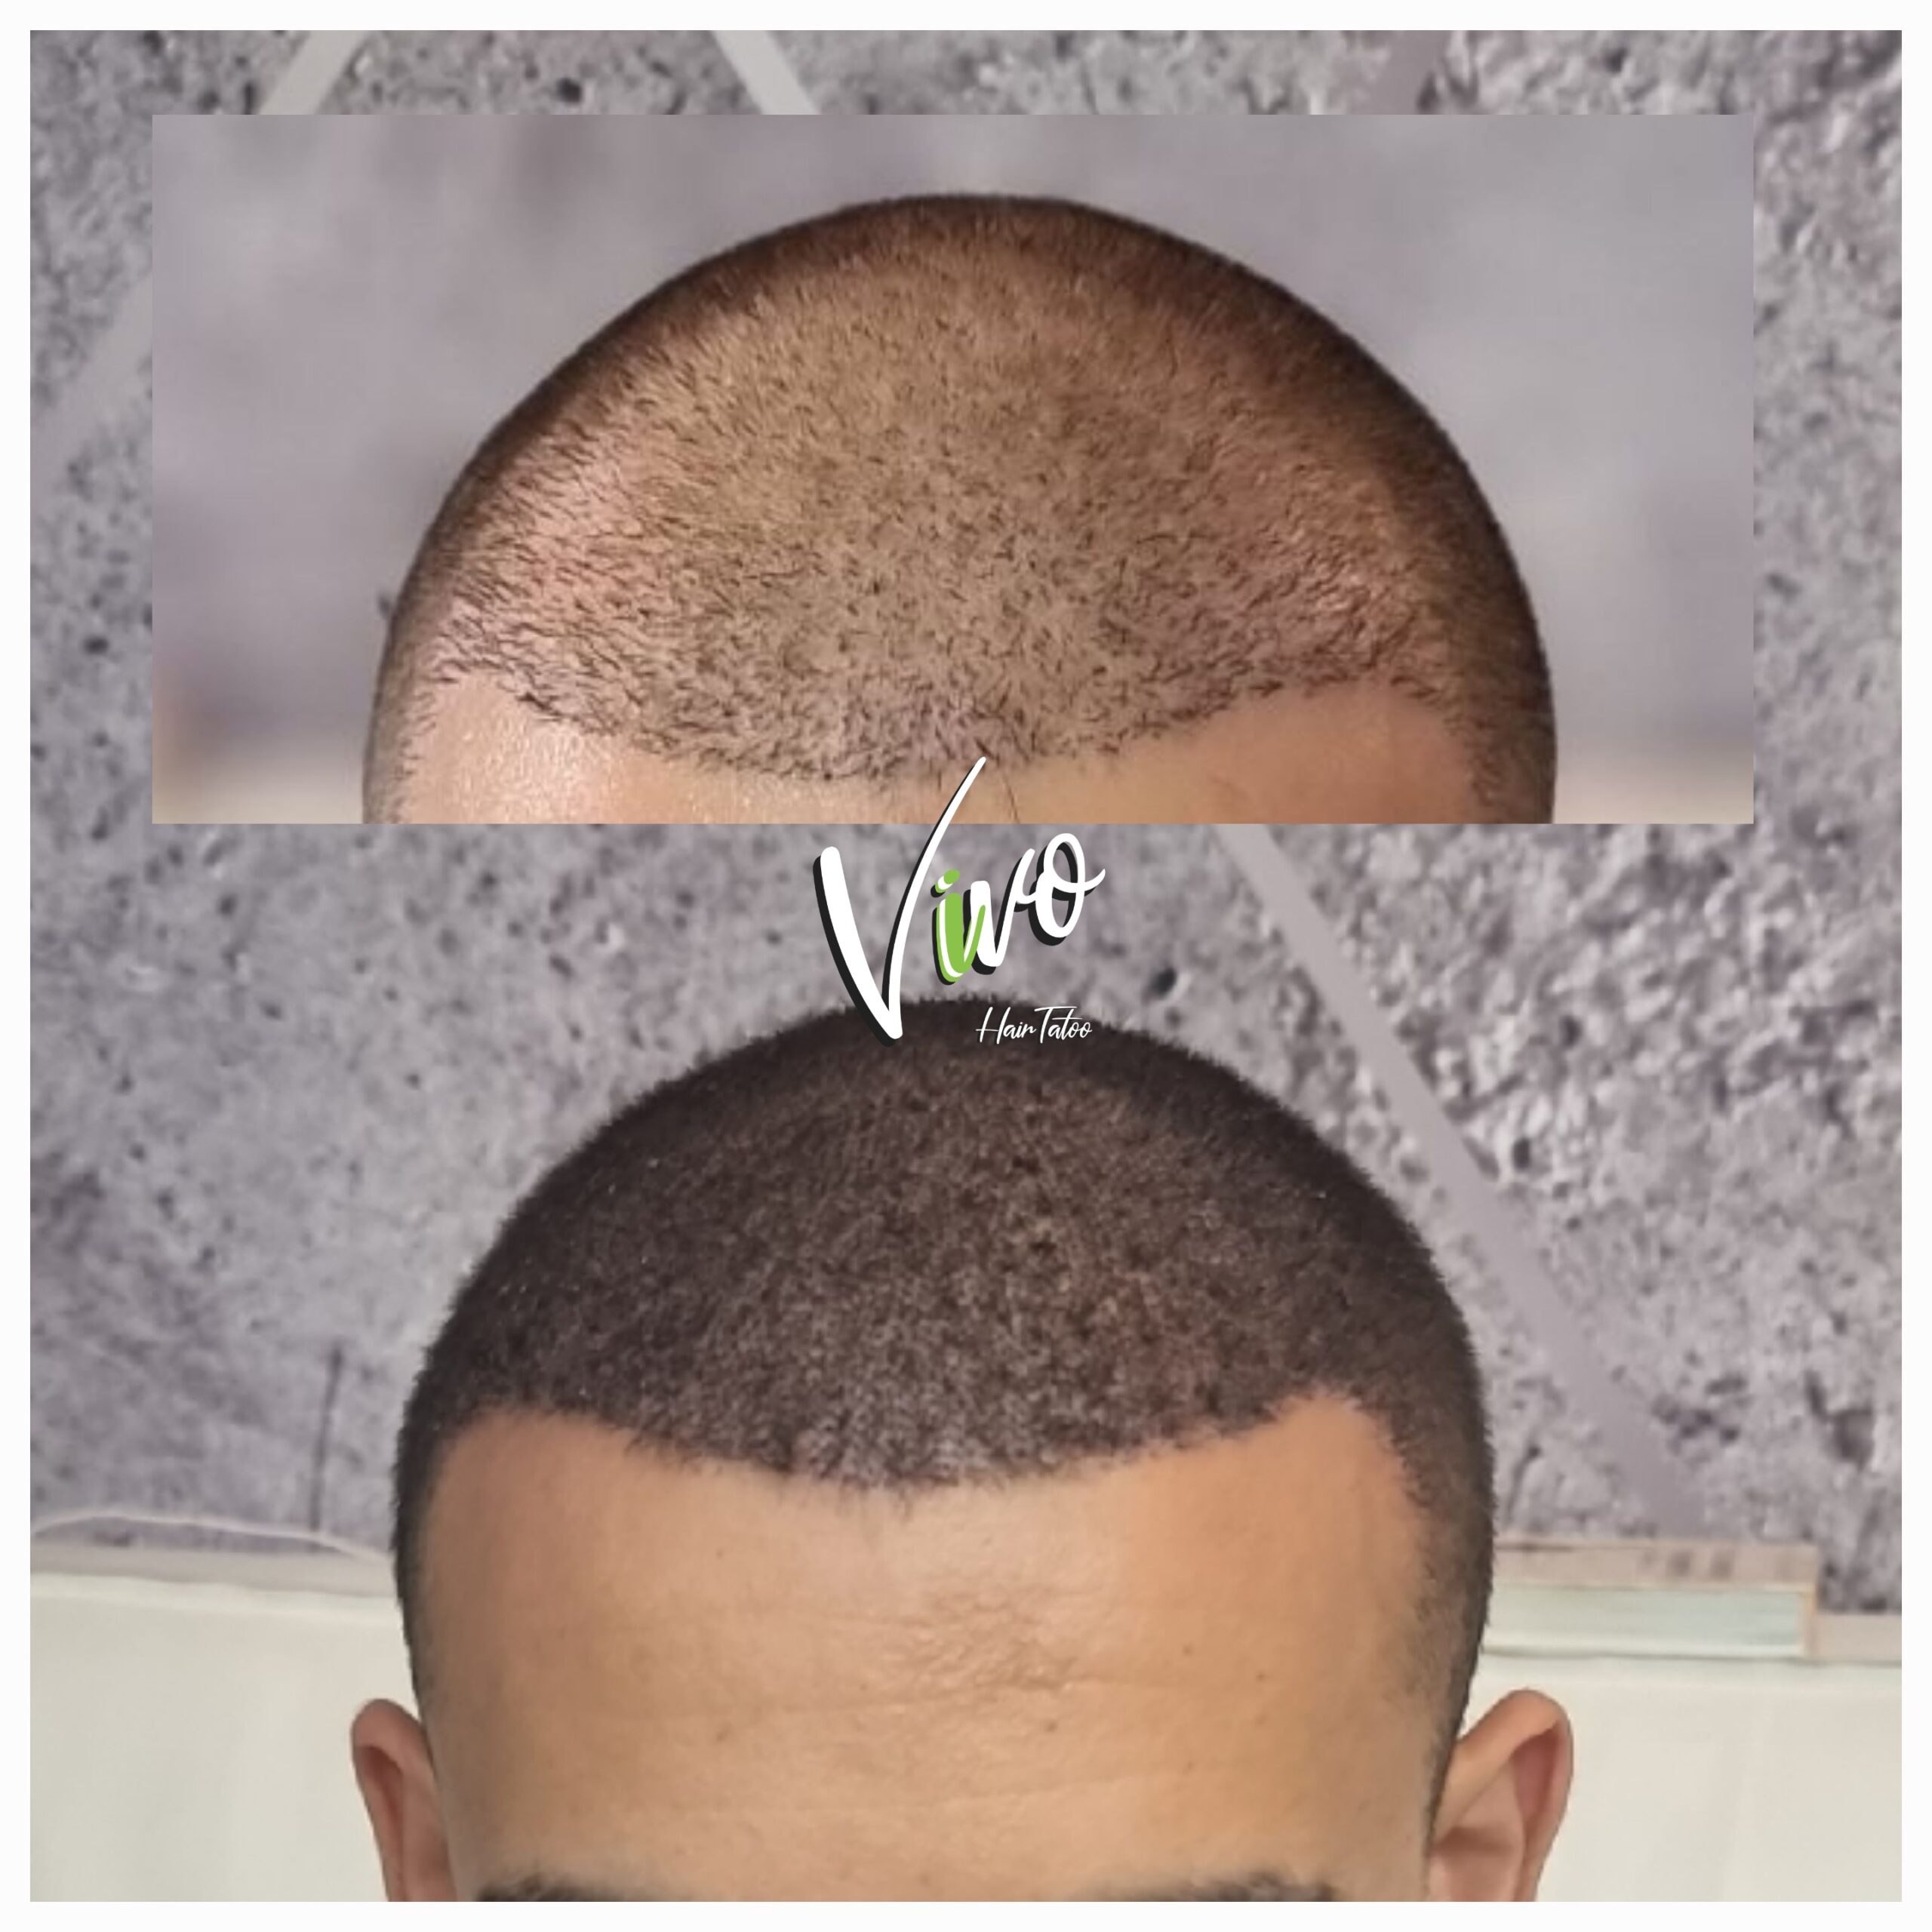 תוצאה לאחר הדמיית שיער אצל Vivo - מומחה לתיקון השתלות שיער